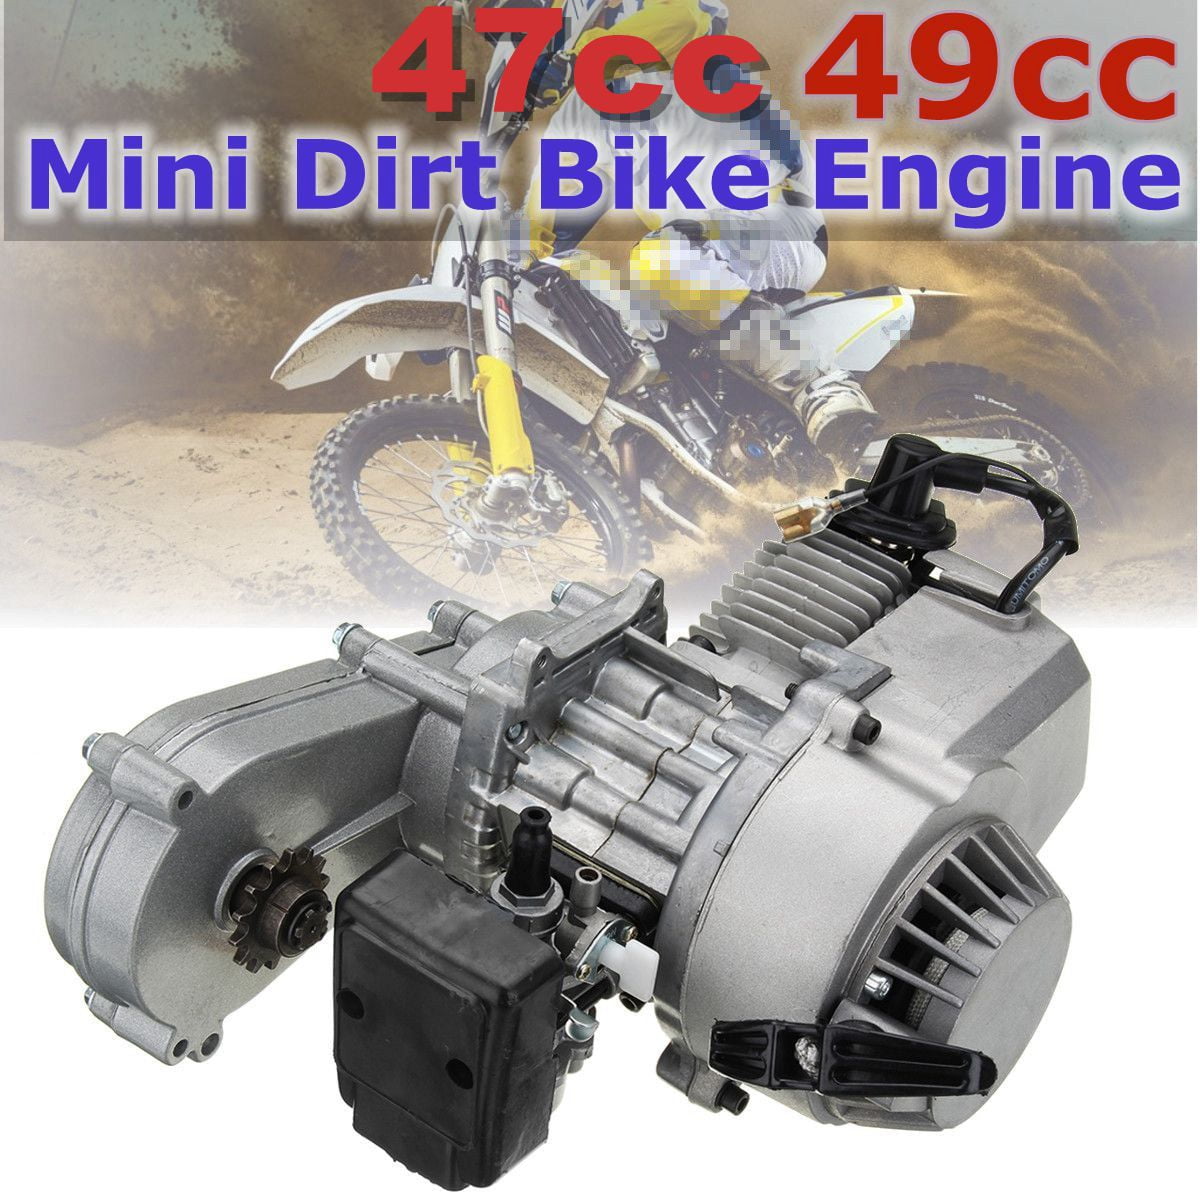 Full Kit New 2 Stroke 49cc Mini Dirt Bike Complete Engine Metal Pull Start. 